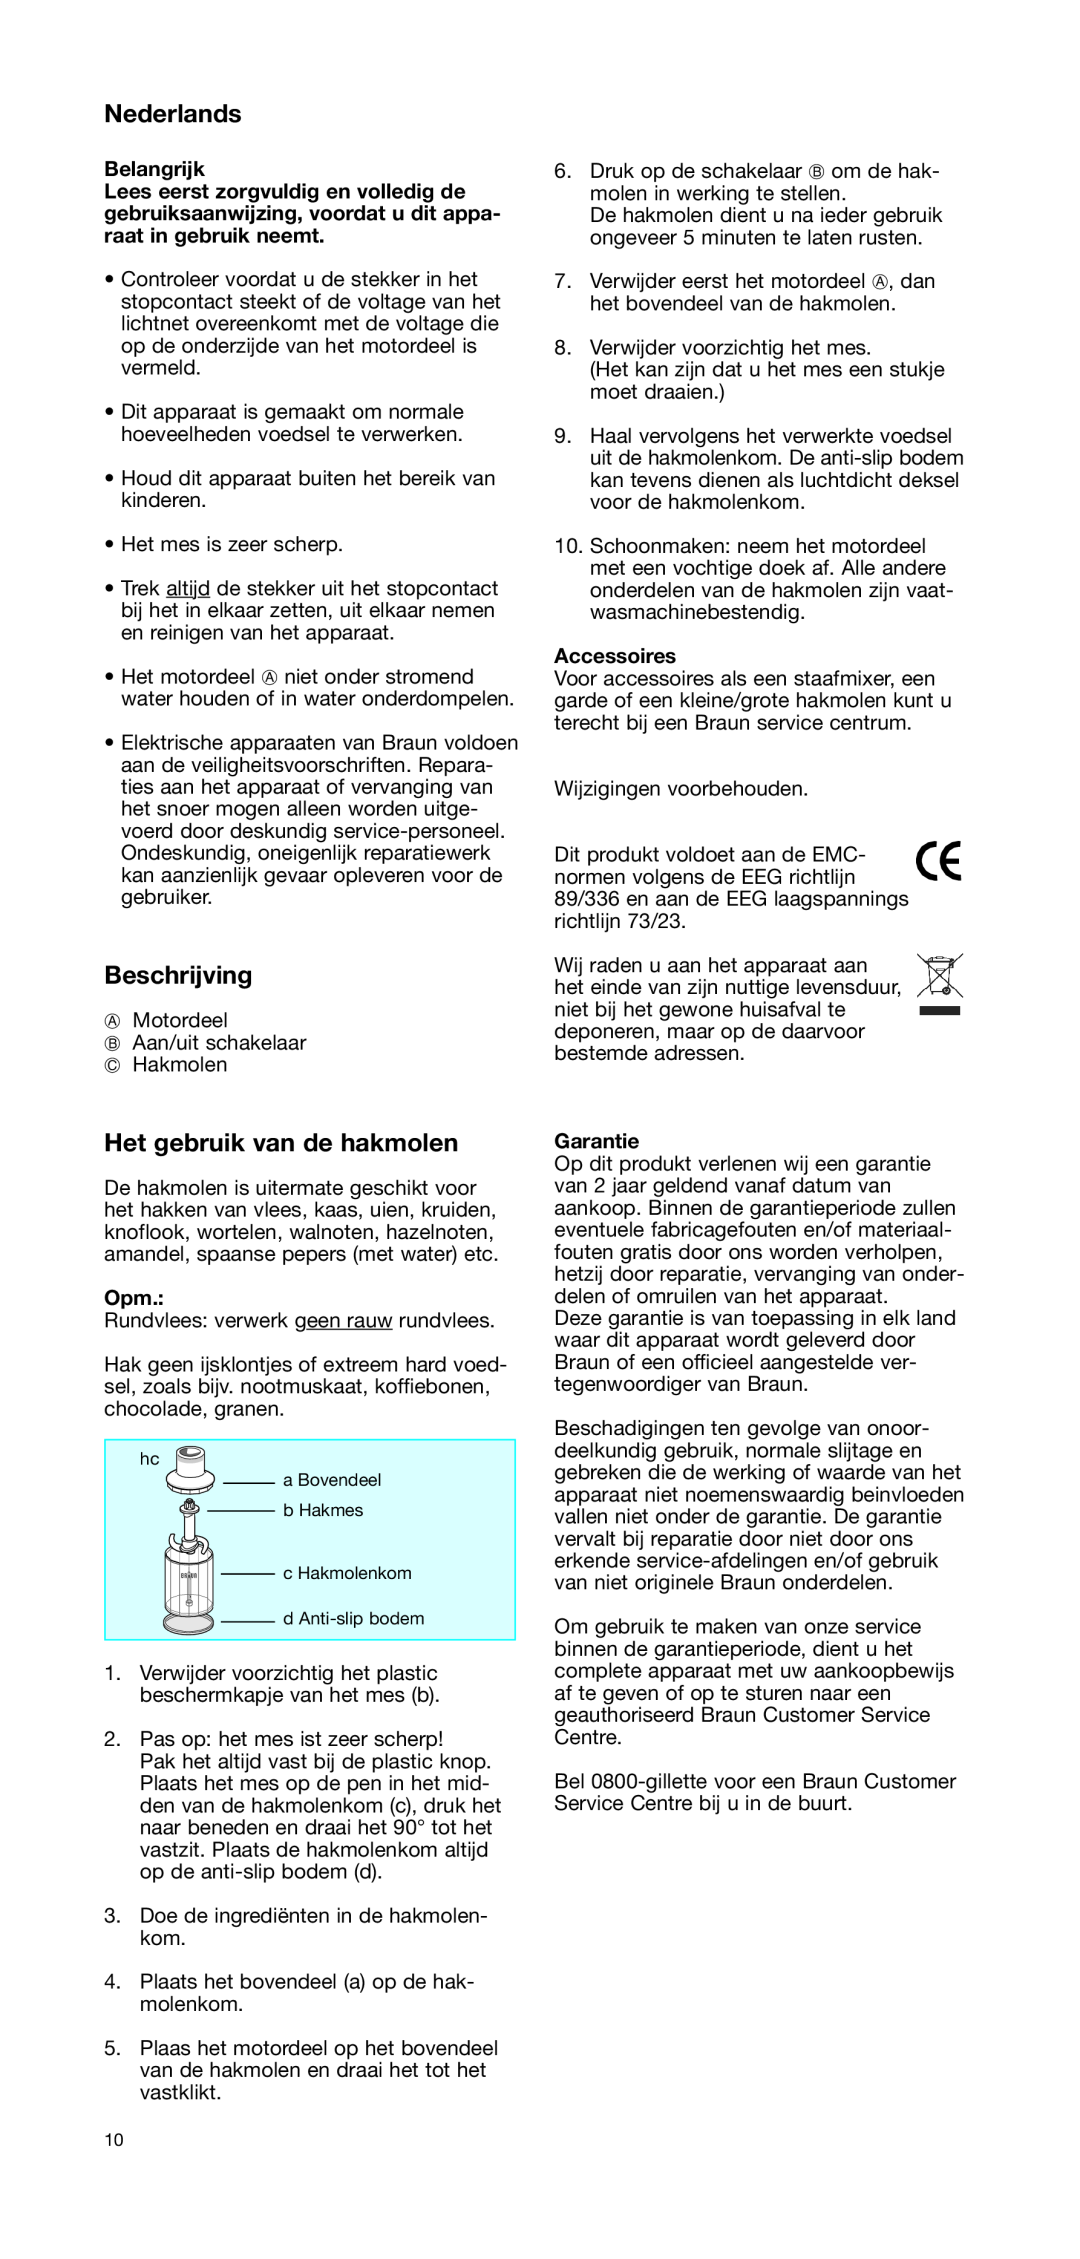 Braun CH 100 manual Nederlands, Beschrijving, Het gebruik van de hakmolen, Belangrijk, Accessoires, Garantie 